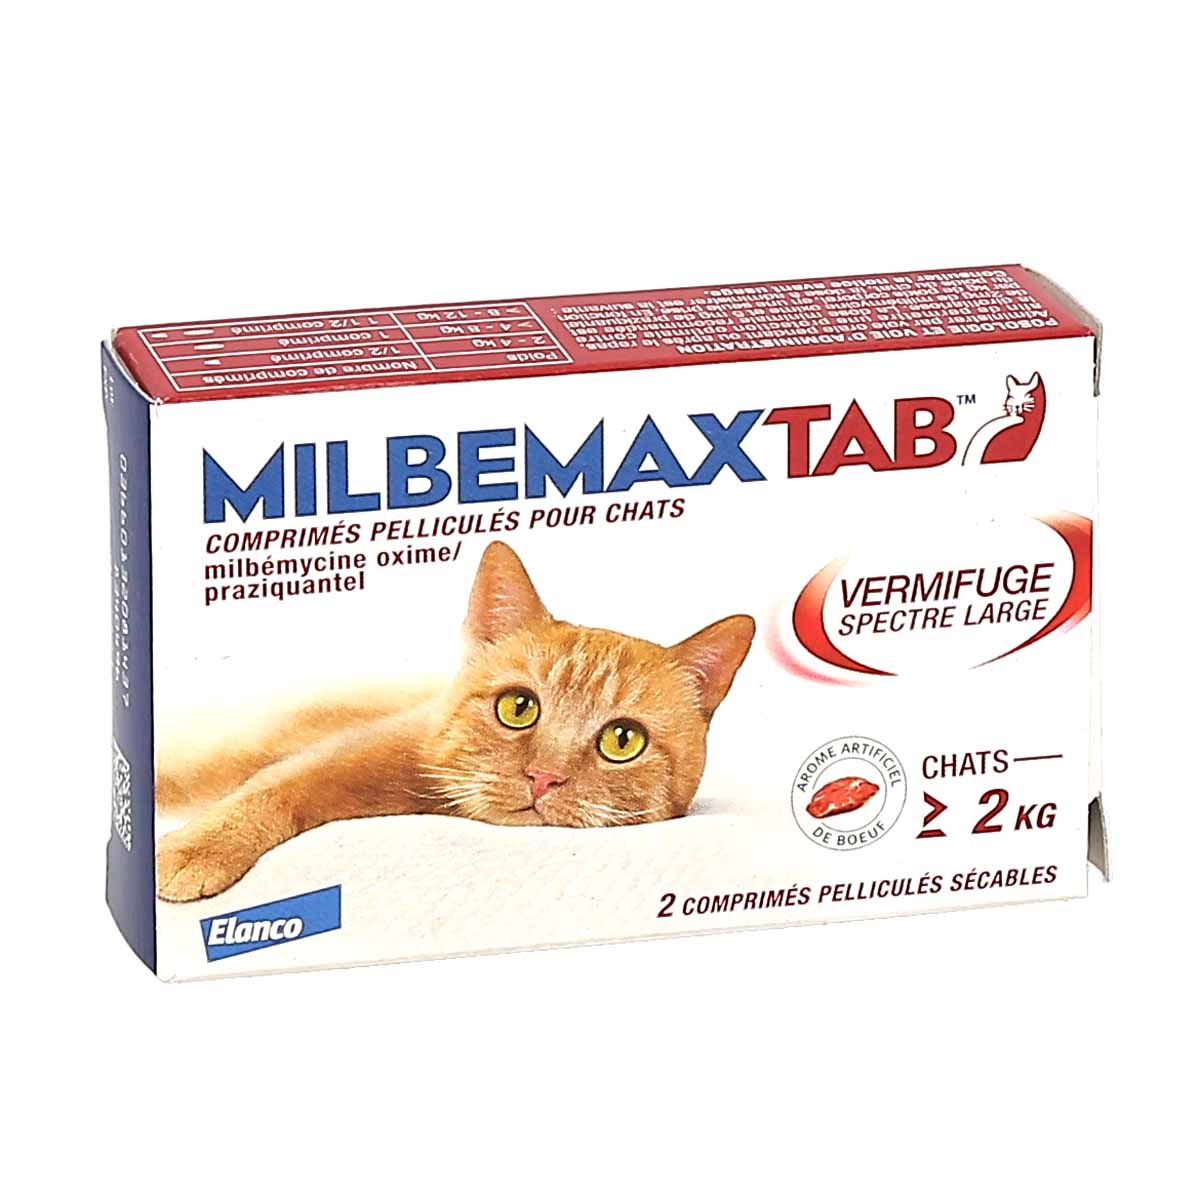 Milbemax : comment utiliser ce vermifuge pour chien et pour chat ?